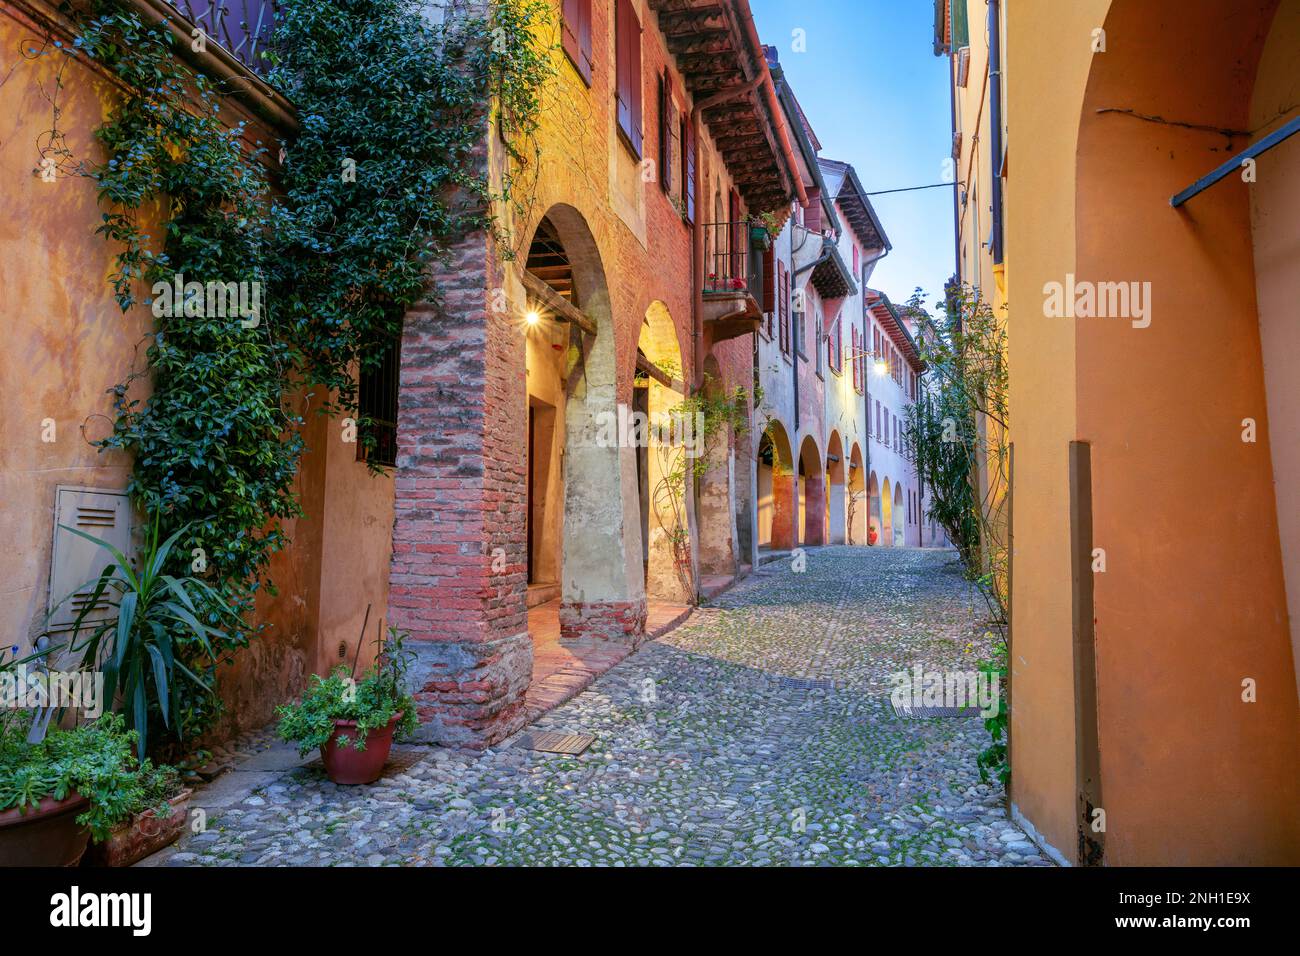 Treviso, Italia. Immagine del paesaggio urbano di una strada colorata situata nel centro storico di Treviso, Italia al tramonto. Foto Stock